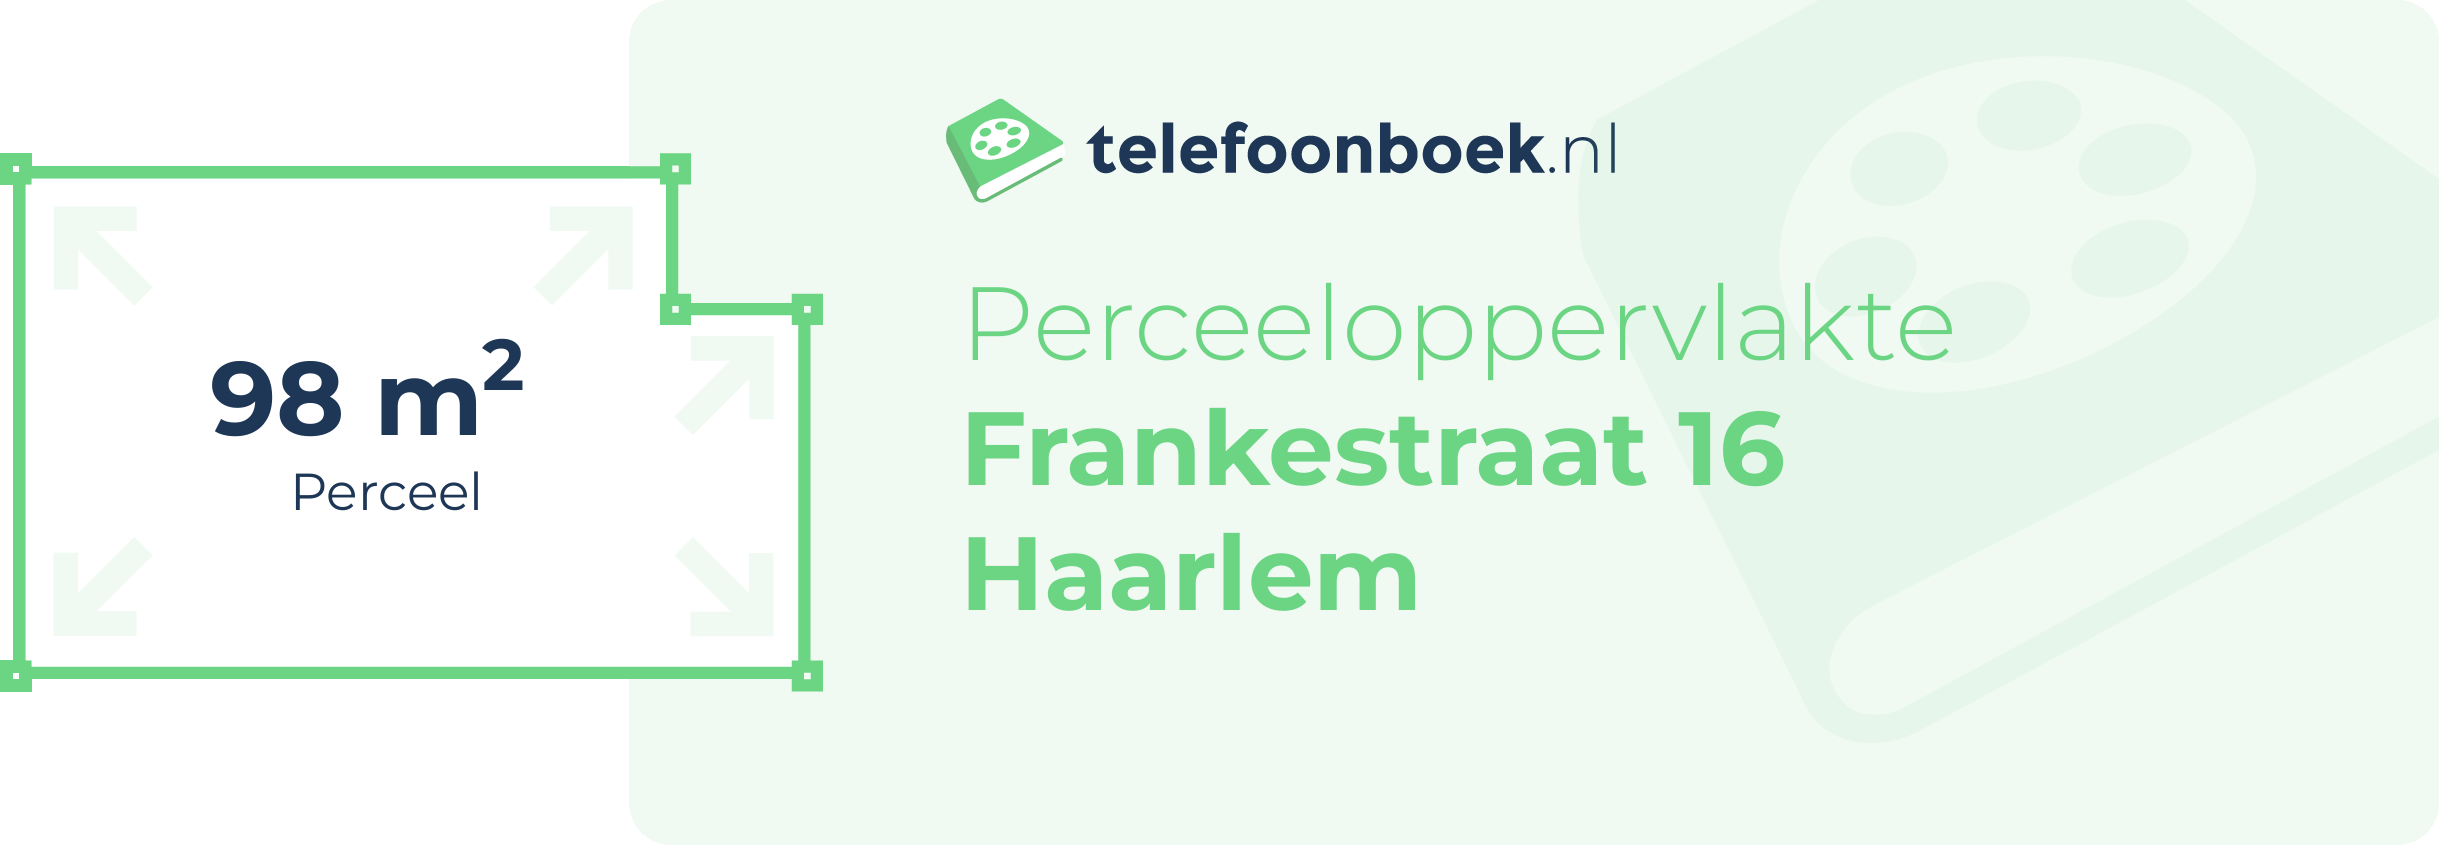 Perceeloppervlakte Frankestraat 16 Haarlem